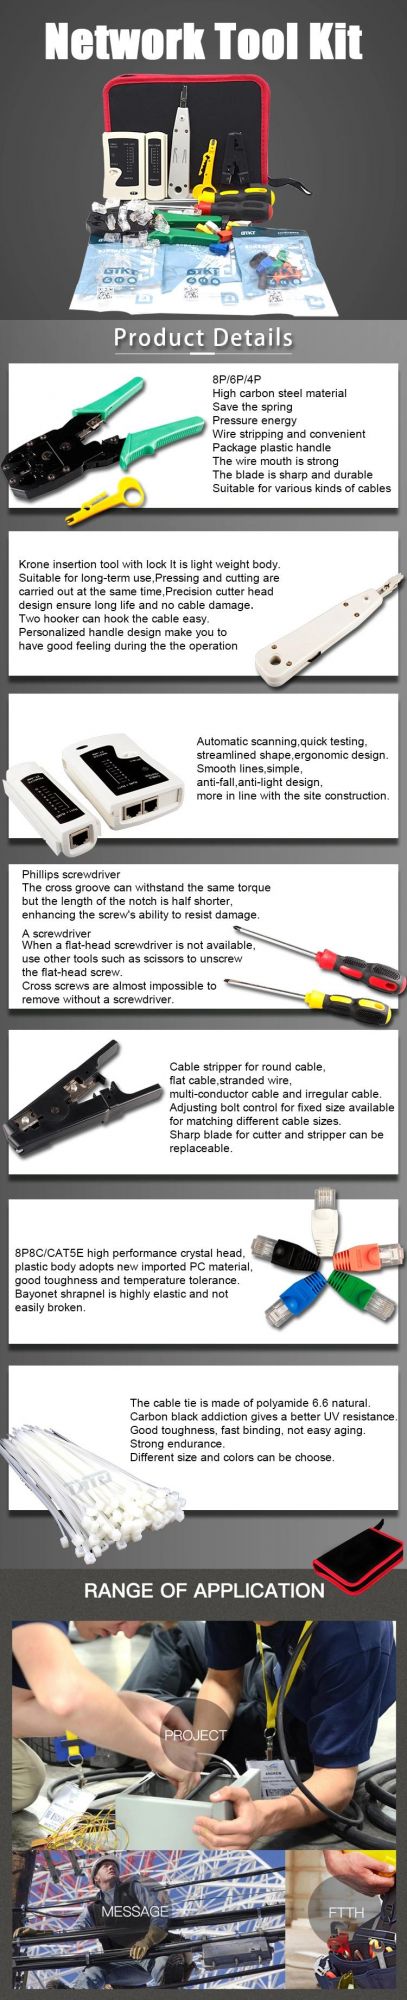 Gcabling Computer RJ45 Tester Krone Insertion Tool Hand Crimping RJ45 Connector Ethernet Crimper Kit